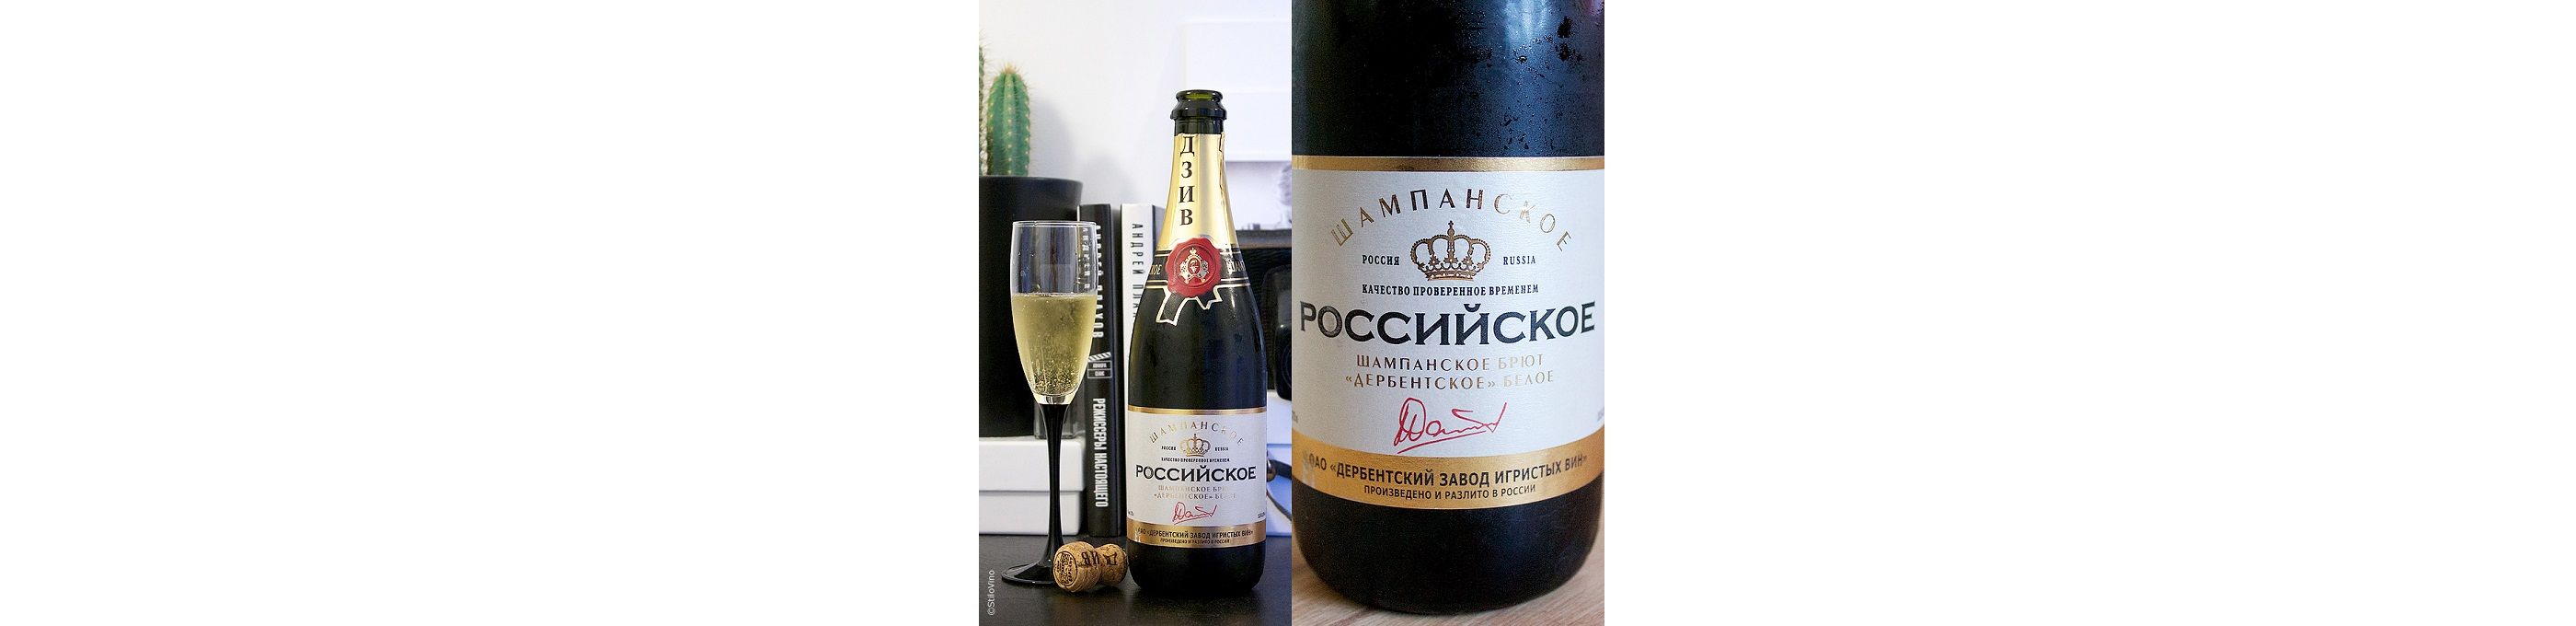 По итогам масштабного исследования отечественных вин проводимого Роскачеством, было установлено что российское вино находиться на достаточно высоком уровне качества.